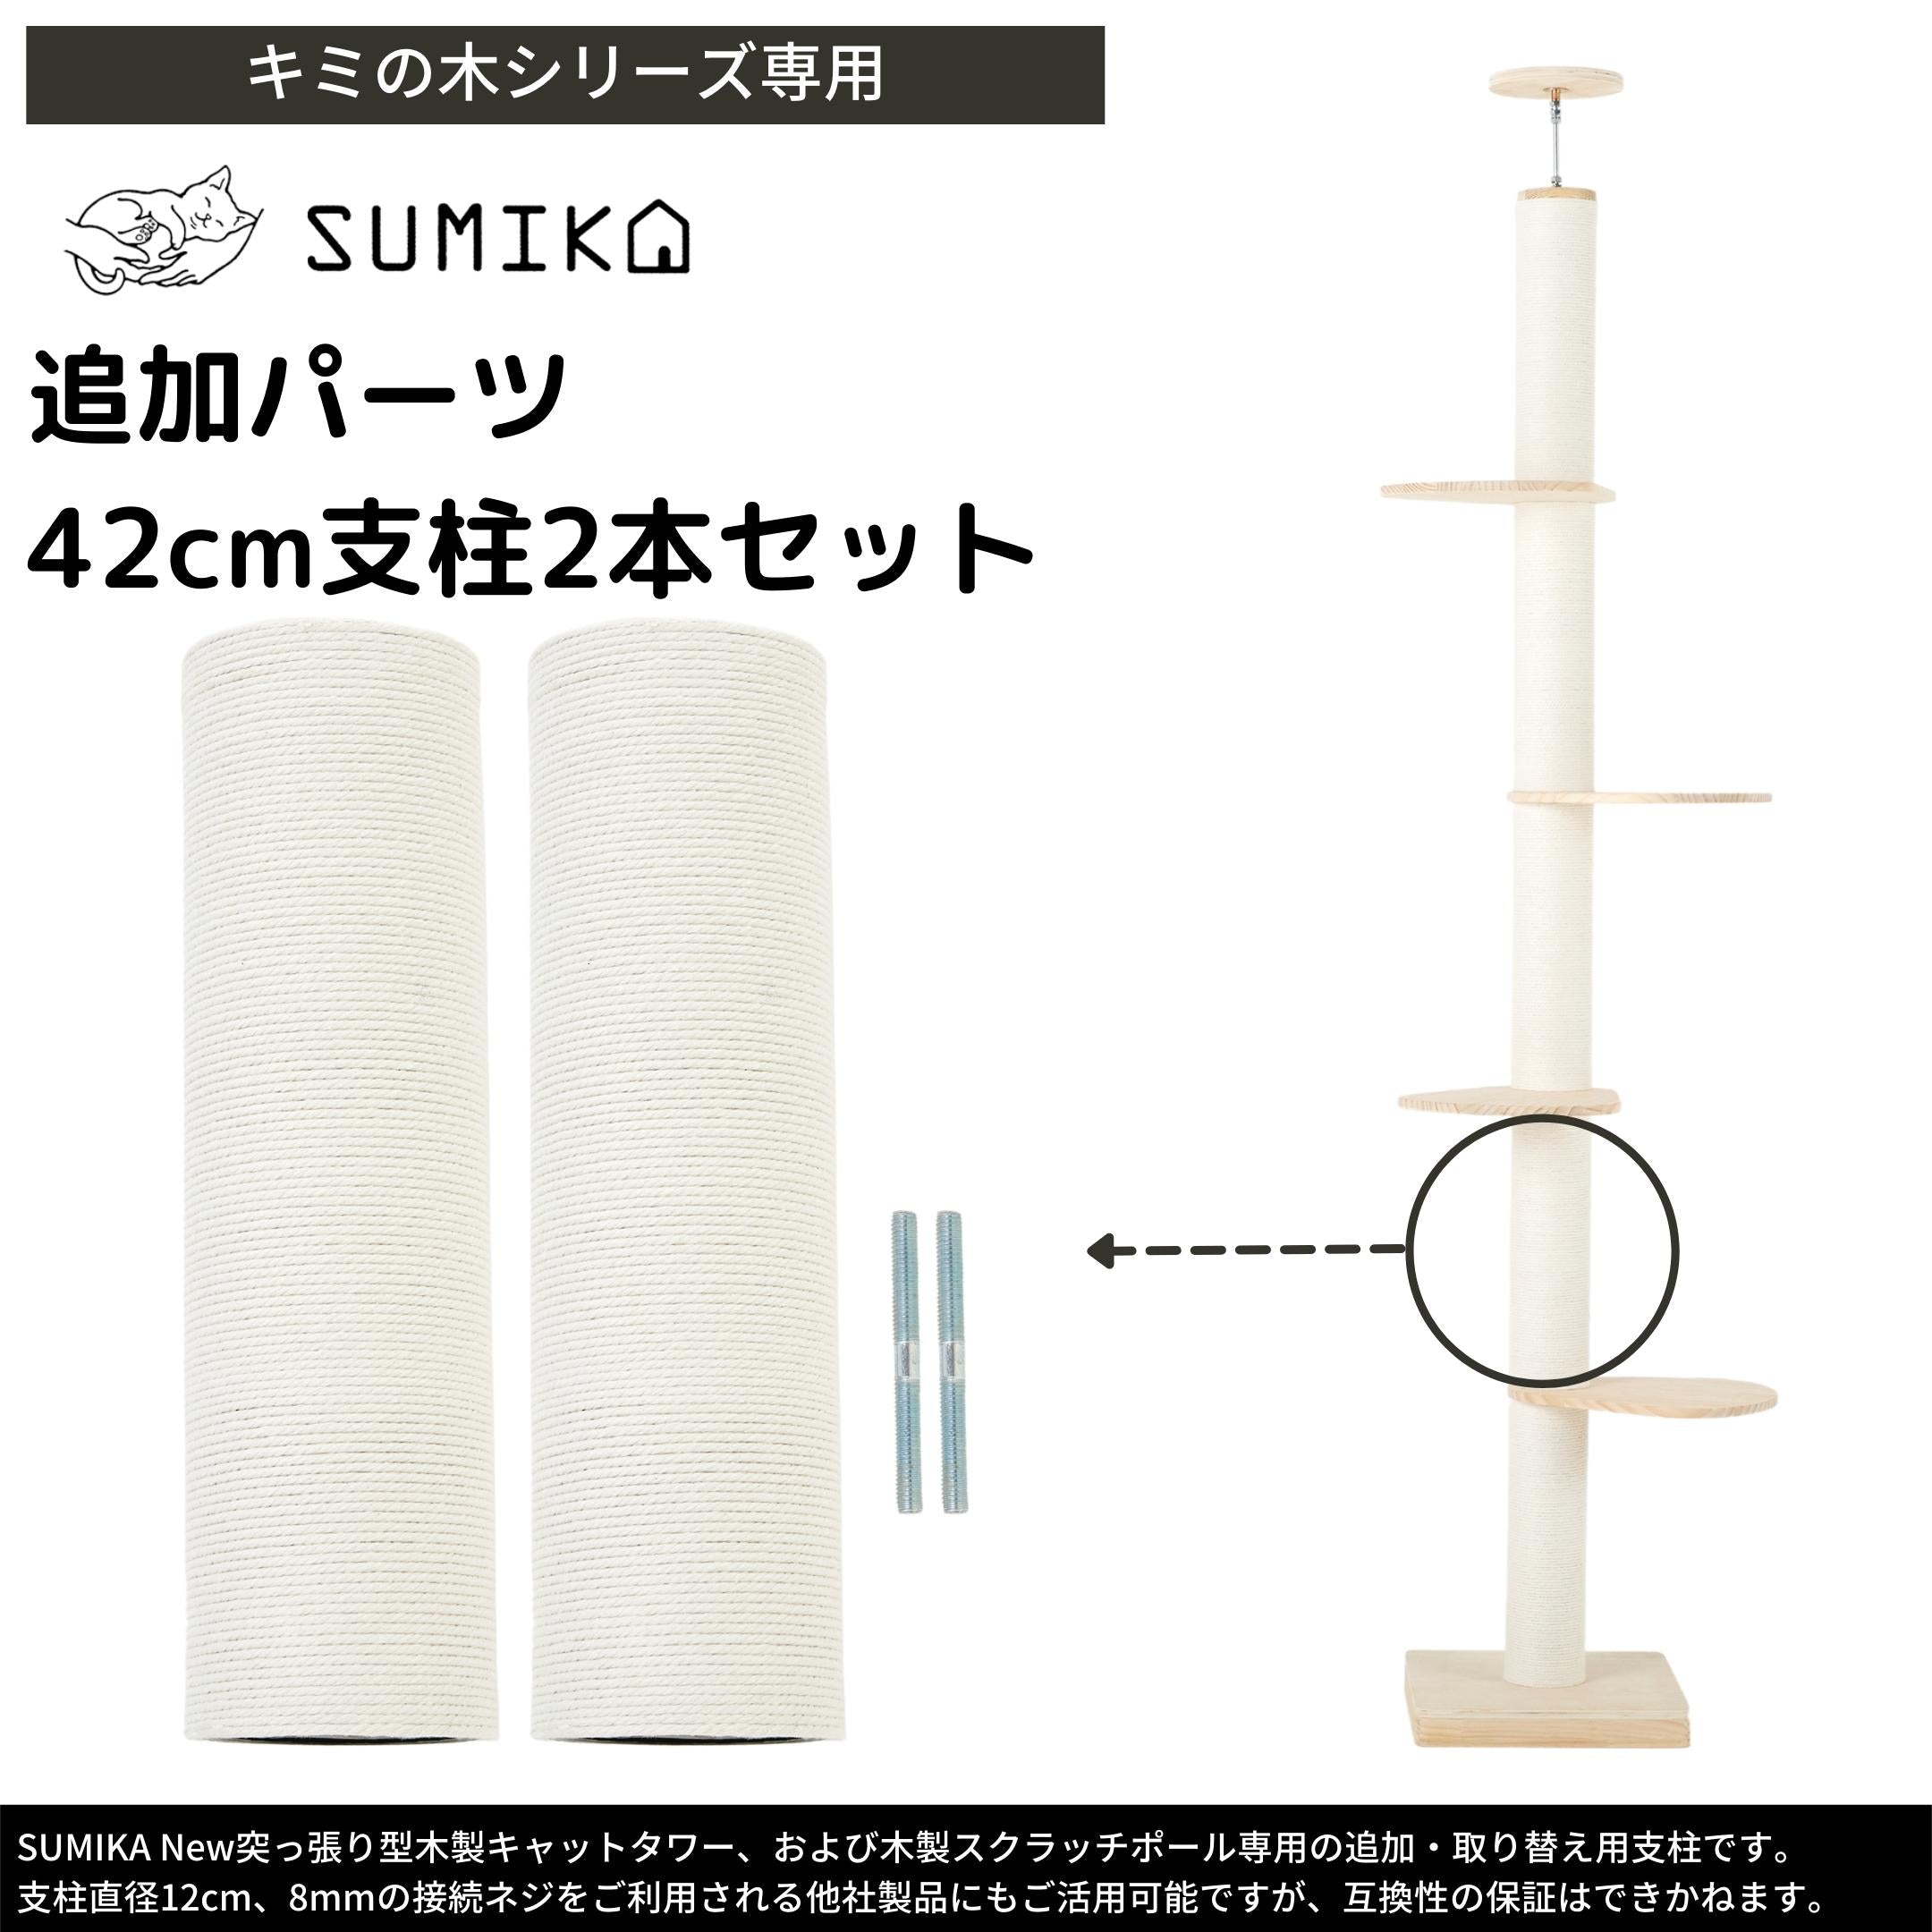 猫暮らし専門店 キミとワタシのSUMIKA New 突っ張り型 木製 キャットタワー専用 42センチ支柱 2本セット